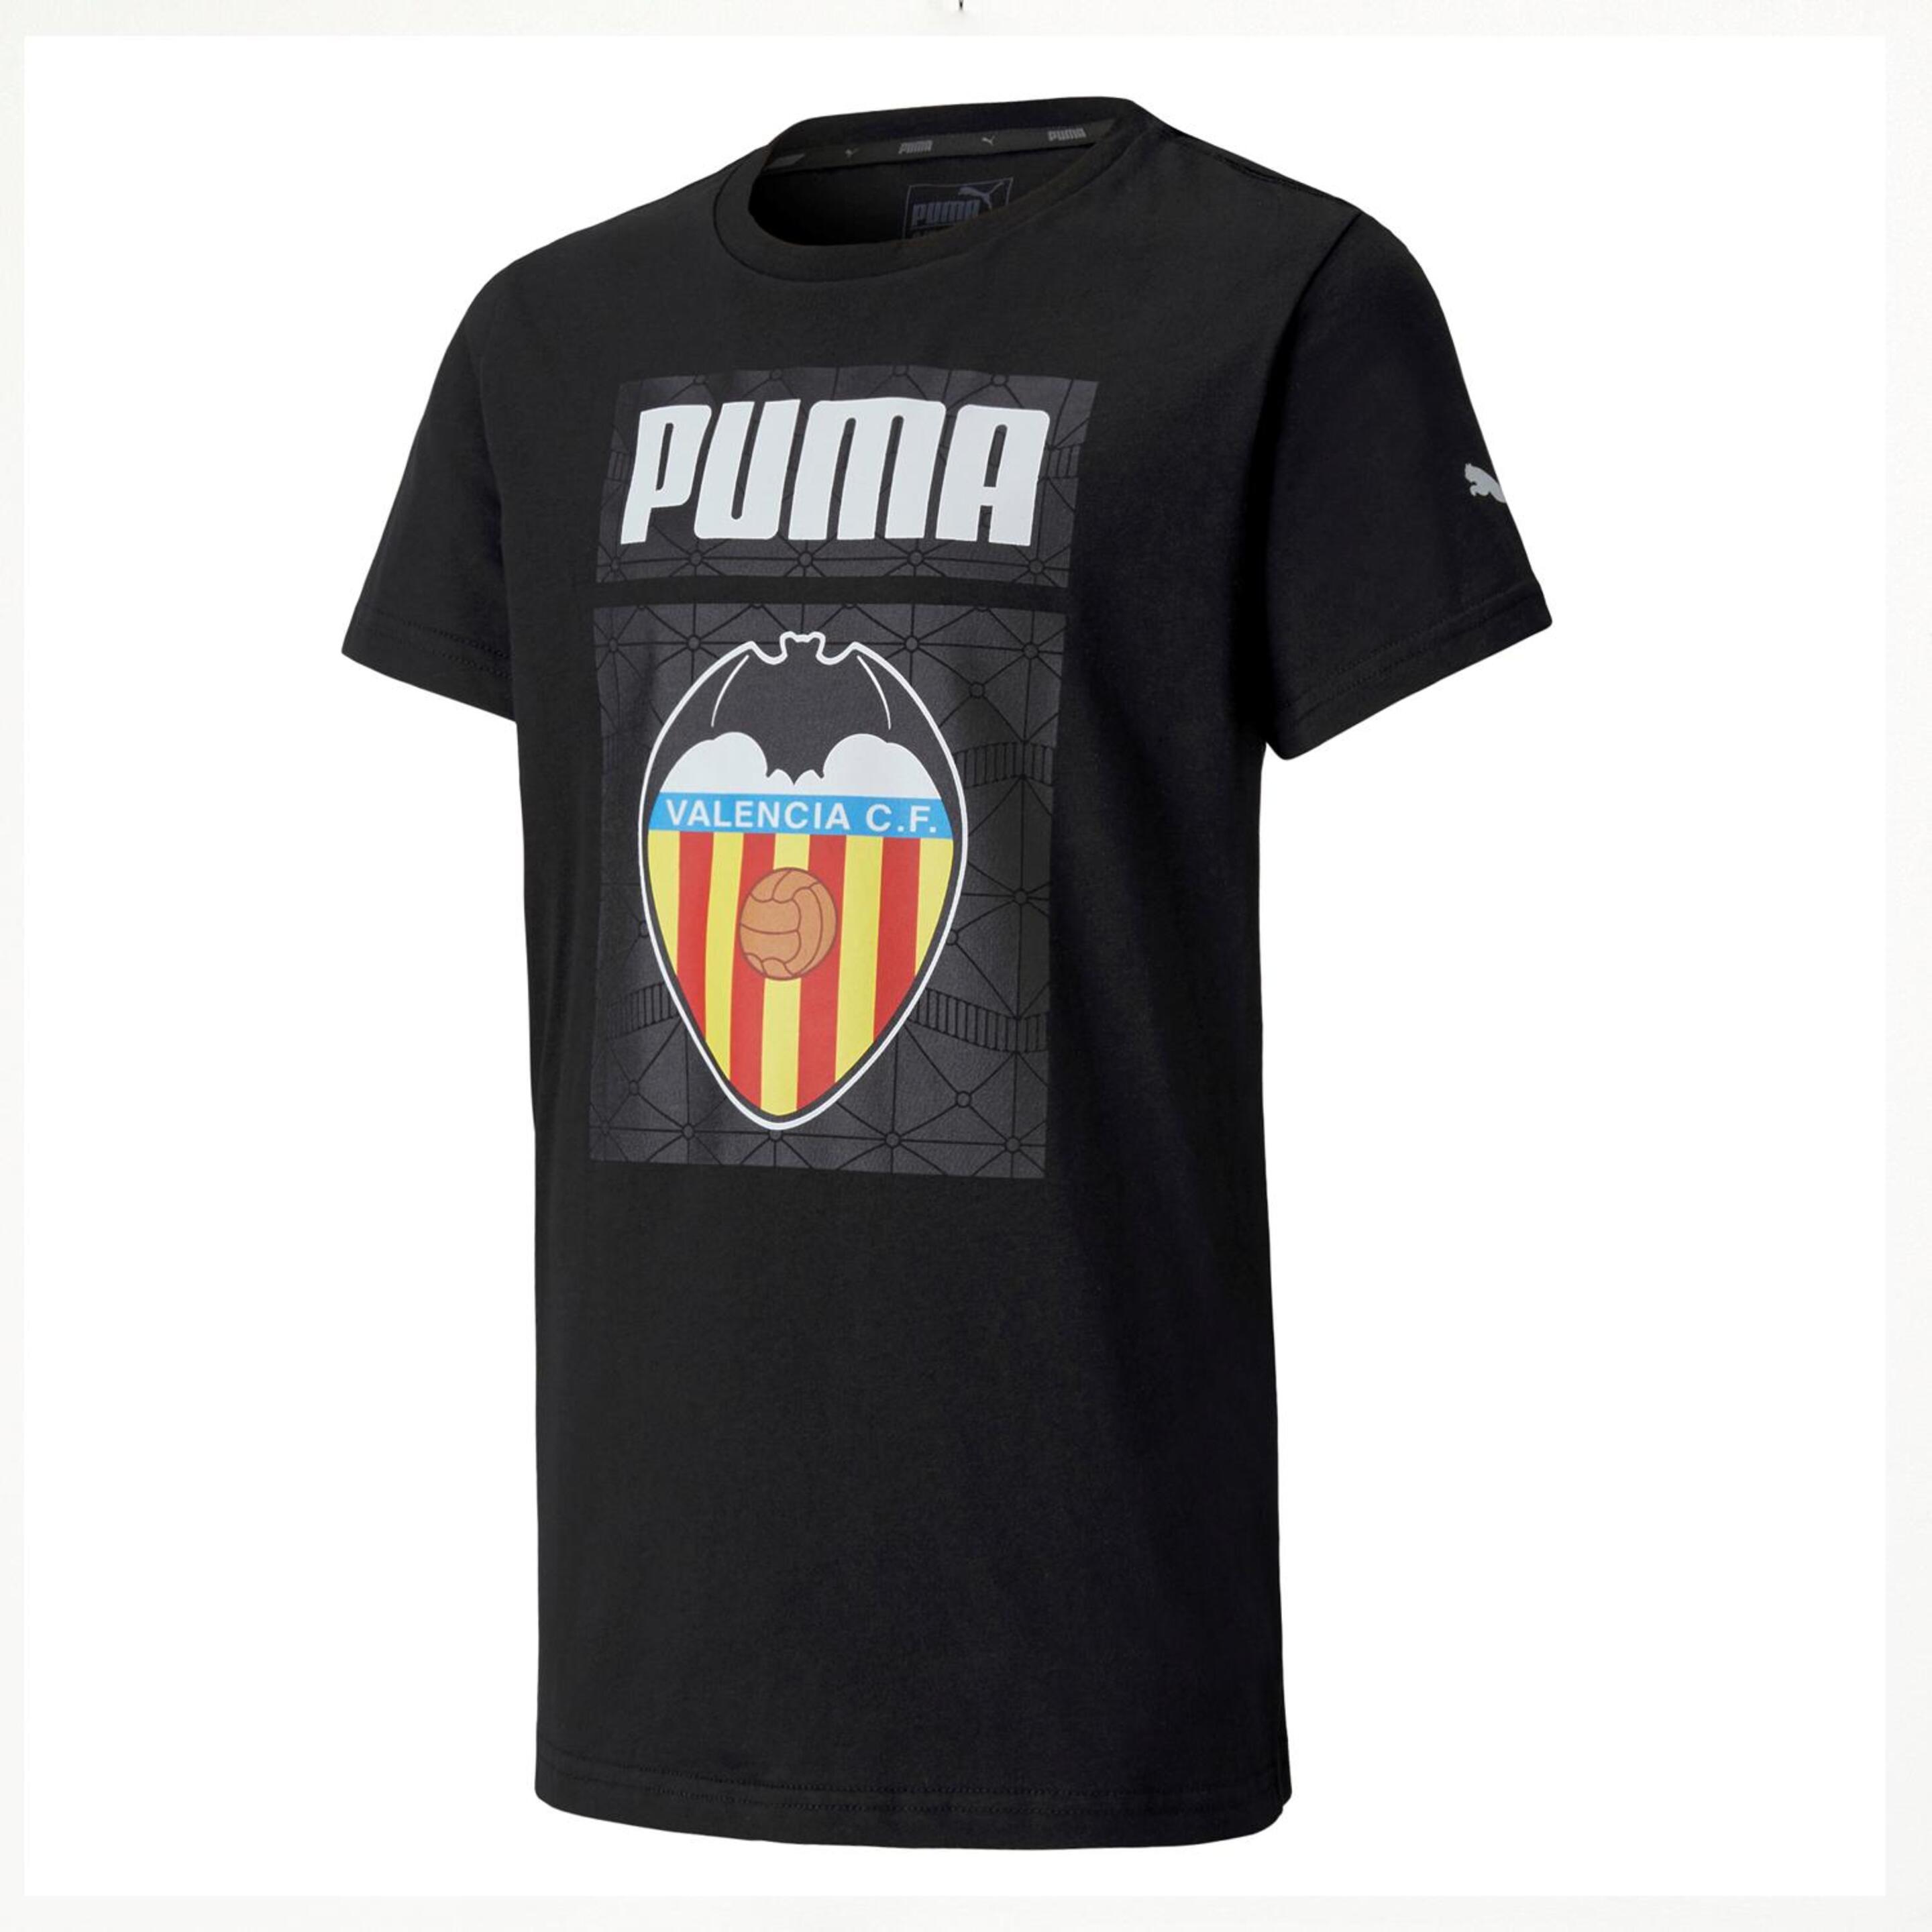 Camiseta Valencia C.f.